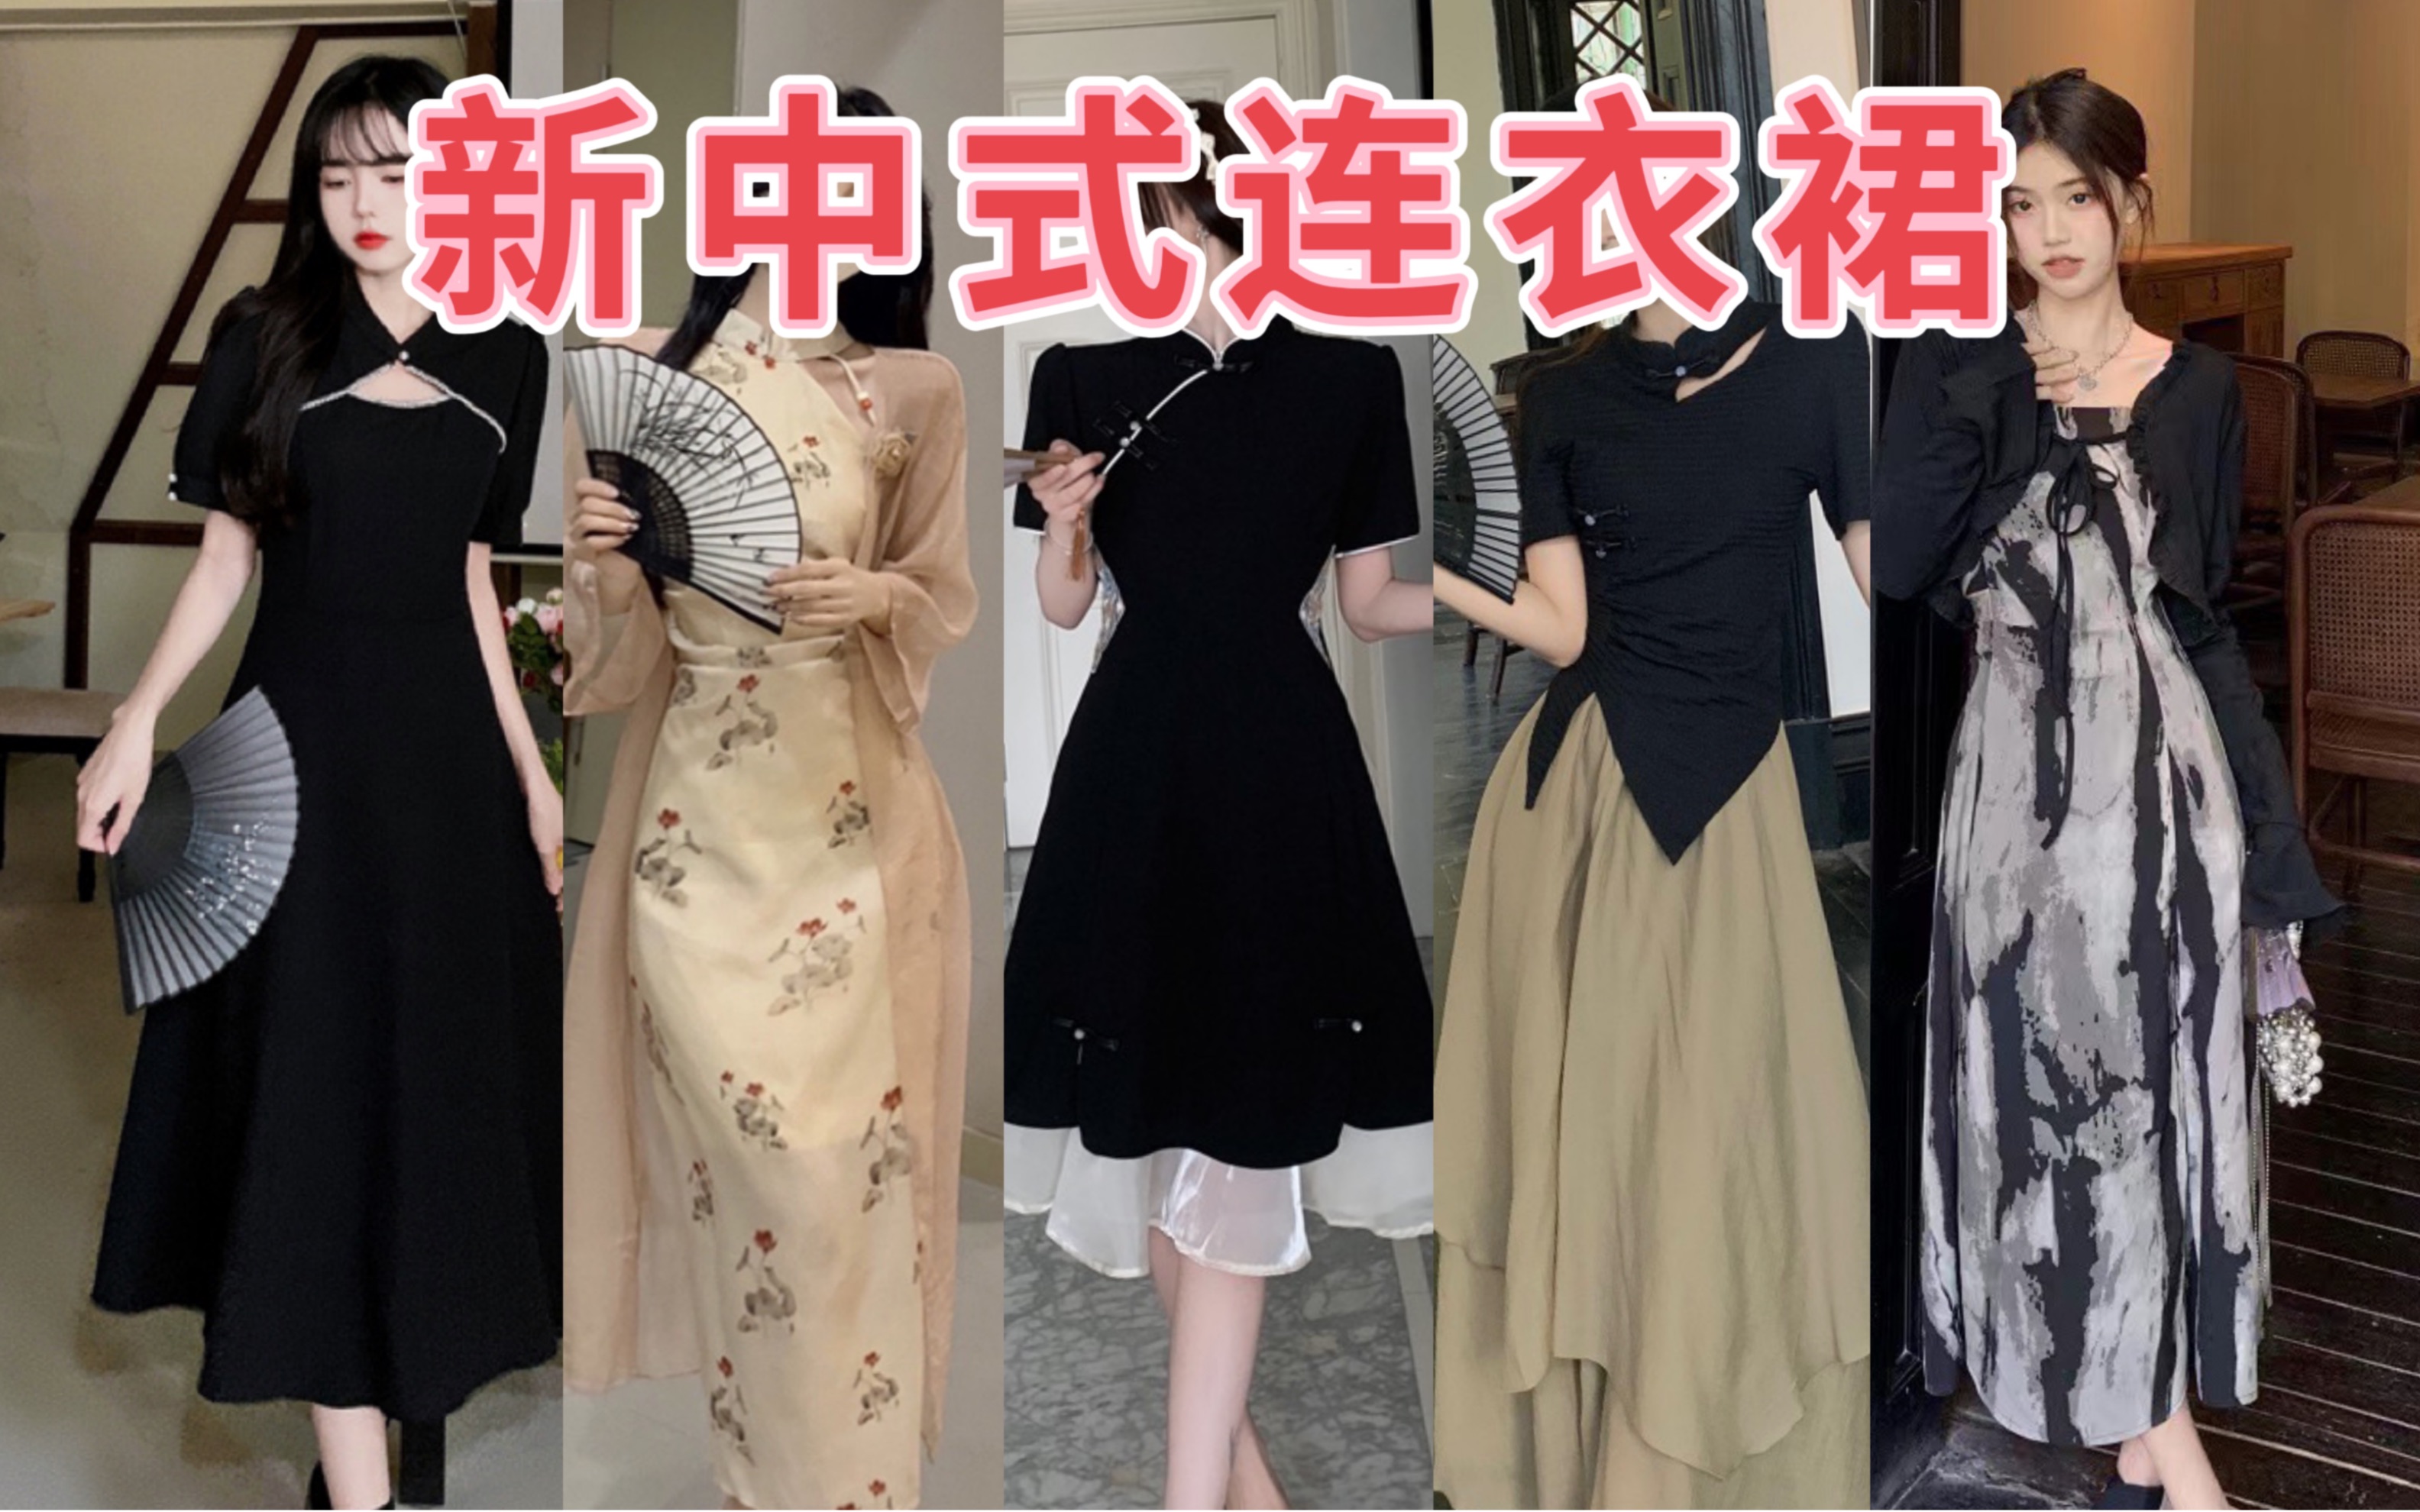 微胖穿新中式太绝啦❗6件有运险连衣裙套装🧚‍♀️姐妹们大胆穿😍